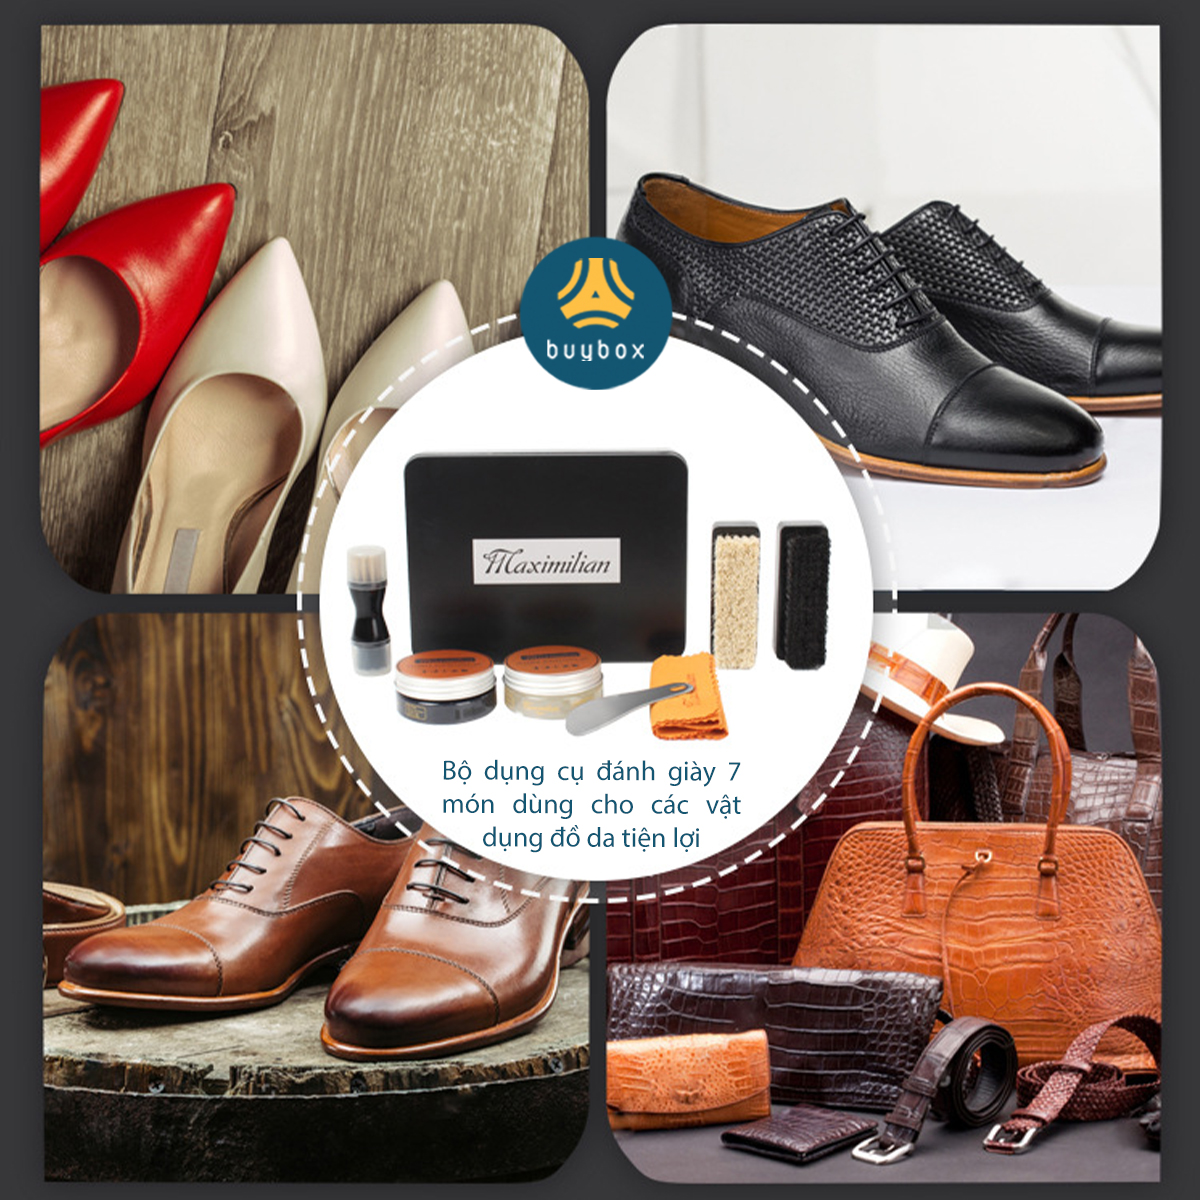 Bộ dụng cụ đánh giày da 7 món bao gồm xi và đủ bộ bàn chải, có tặng kèm hộp bảo quản giày da sạch sẽ - Buybox - BBPK292